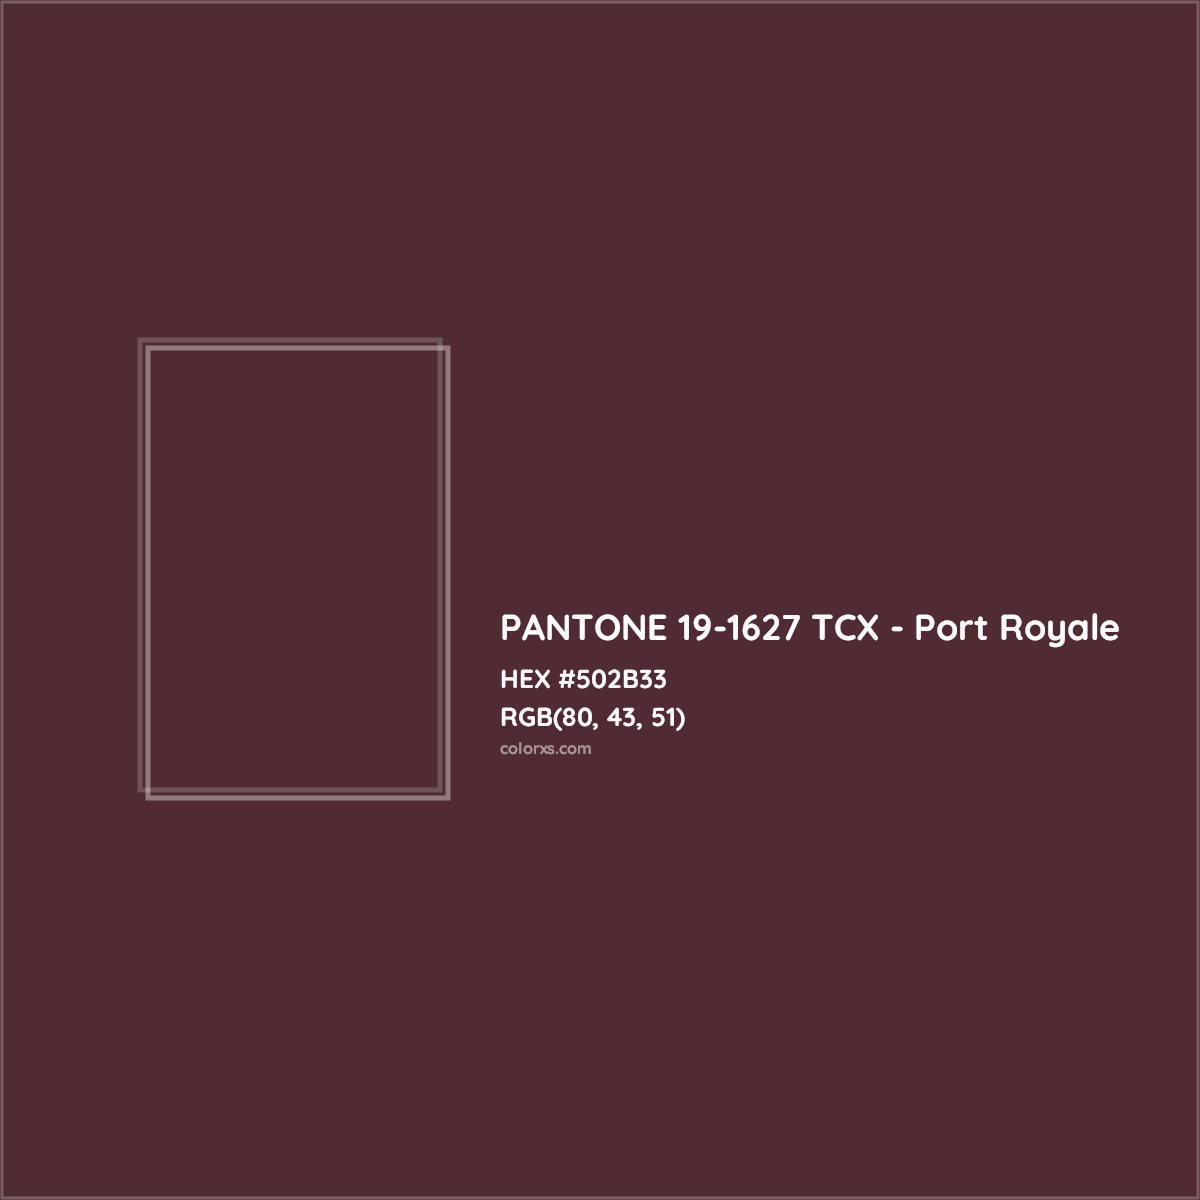 HEX #502B33 PANTONE 19-1627 TCX - Port Royale CMS Pantone TCX - Color Code